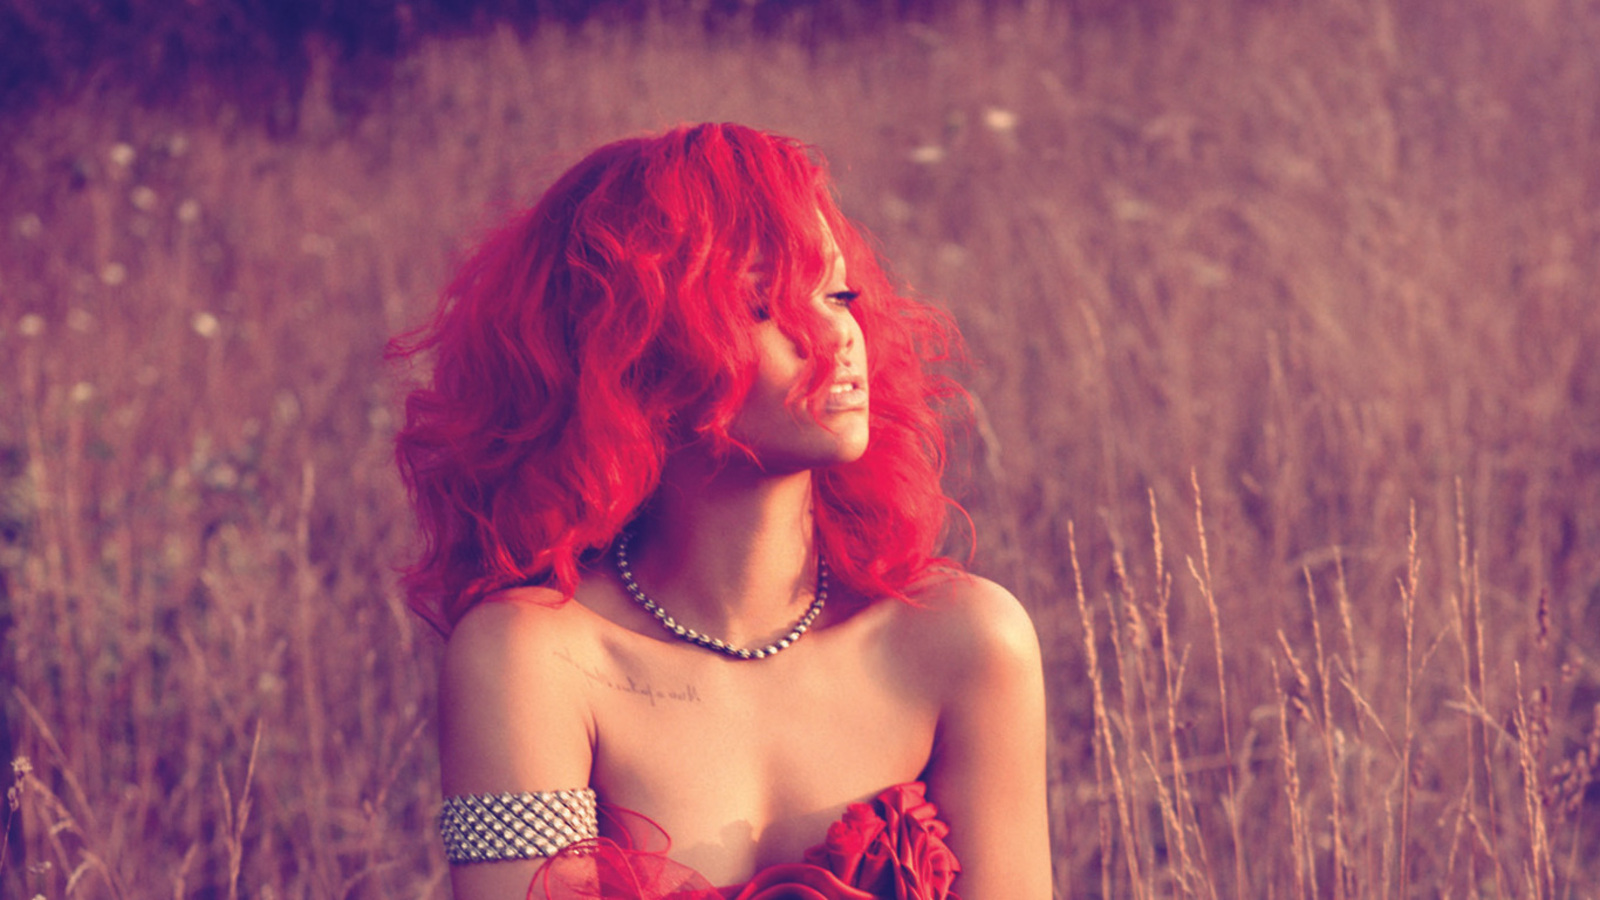 Fond d'ecran Rihanna Only Girl